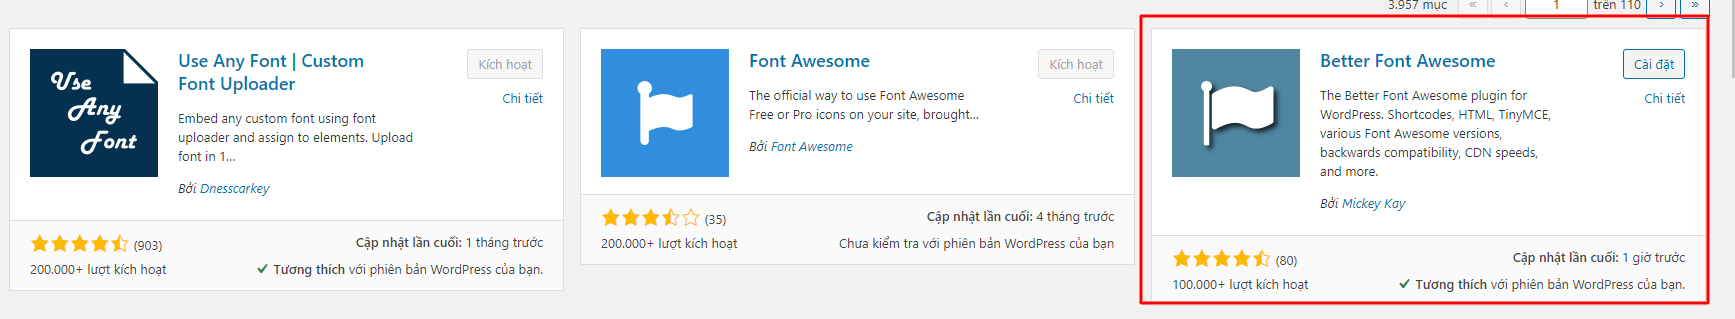 Font Awesome WordPress: Chào mừng đến với những biểu tượng tuyệt đẹp của Font Awesome WordPress! Các biểu tượng này sẽ giúp cho trang web của bạn trông thật chuyên nghiệp và thu hút. Hãy nhanh tay cài đặt và trải nghiệm ngay hôm nay!